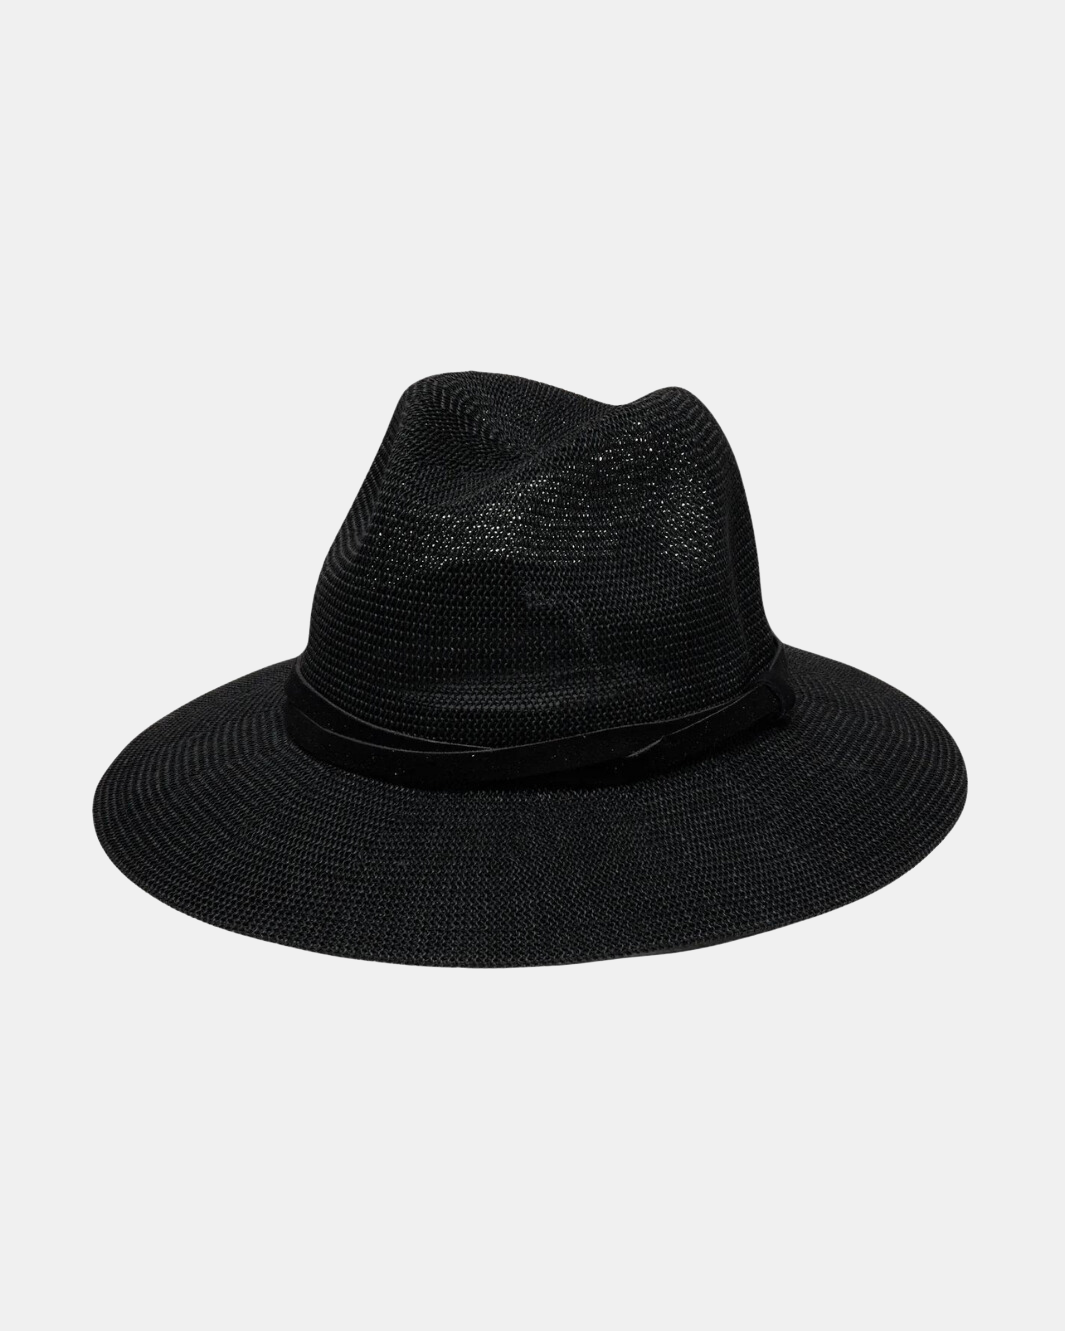 SEDONA HAT IN BLACK - Romi Boutique